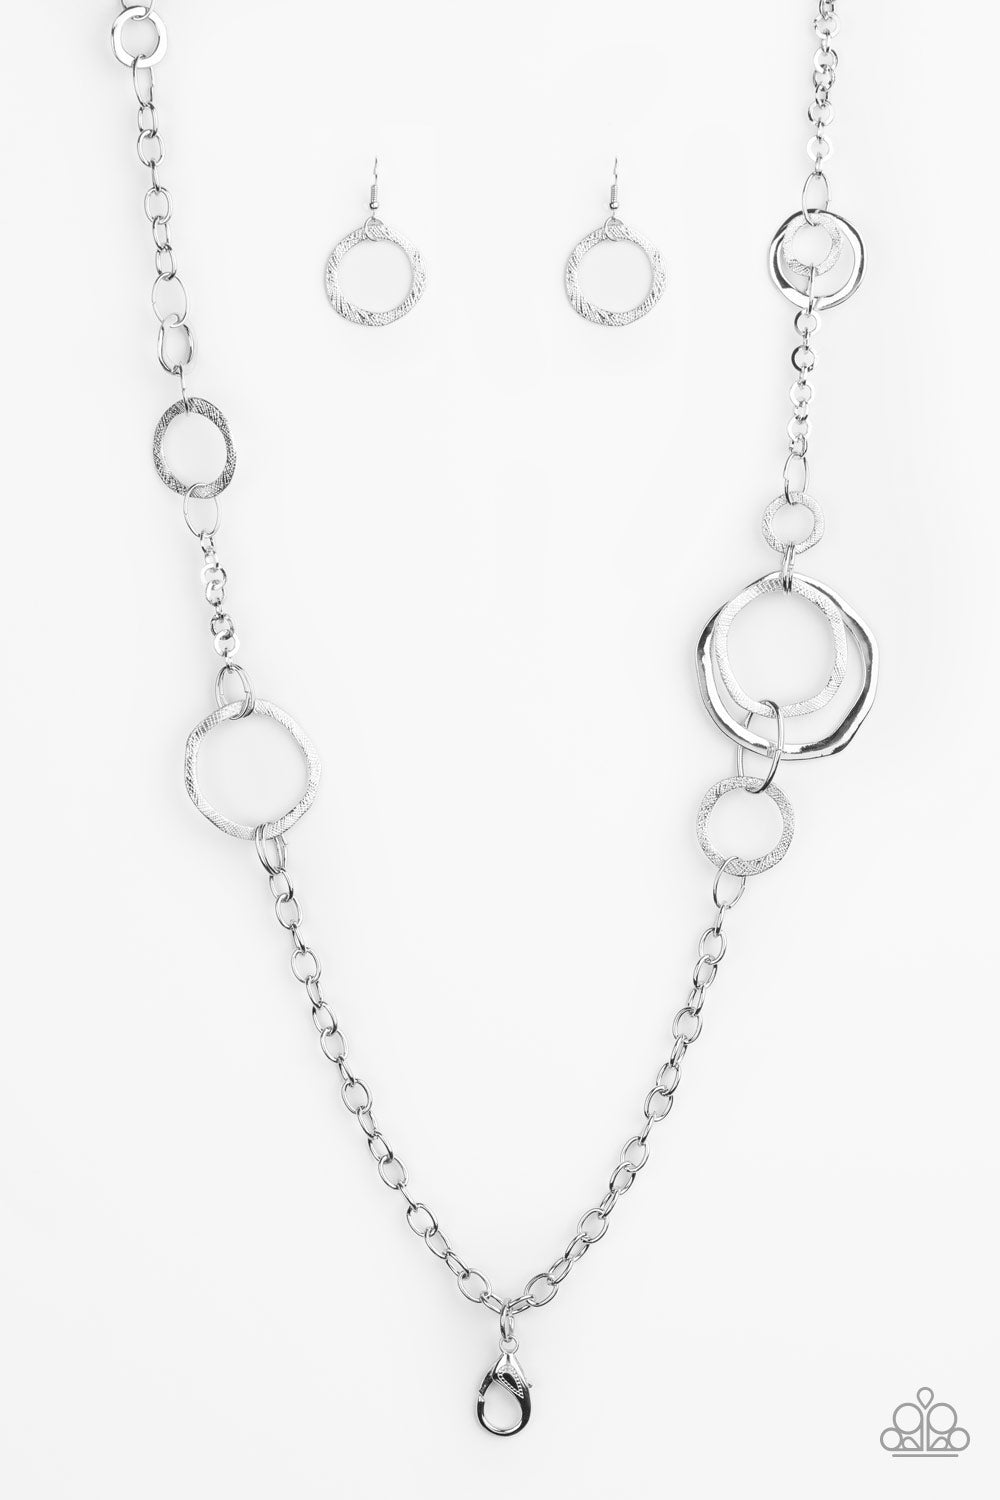 Amped Up Metallics - Silver Lanyard Necklace Set